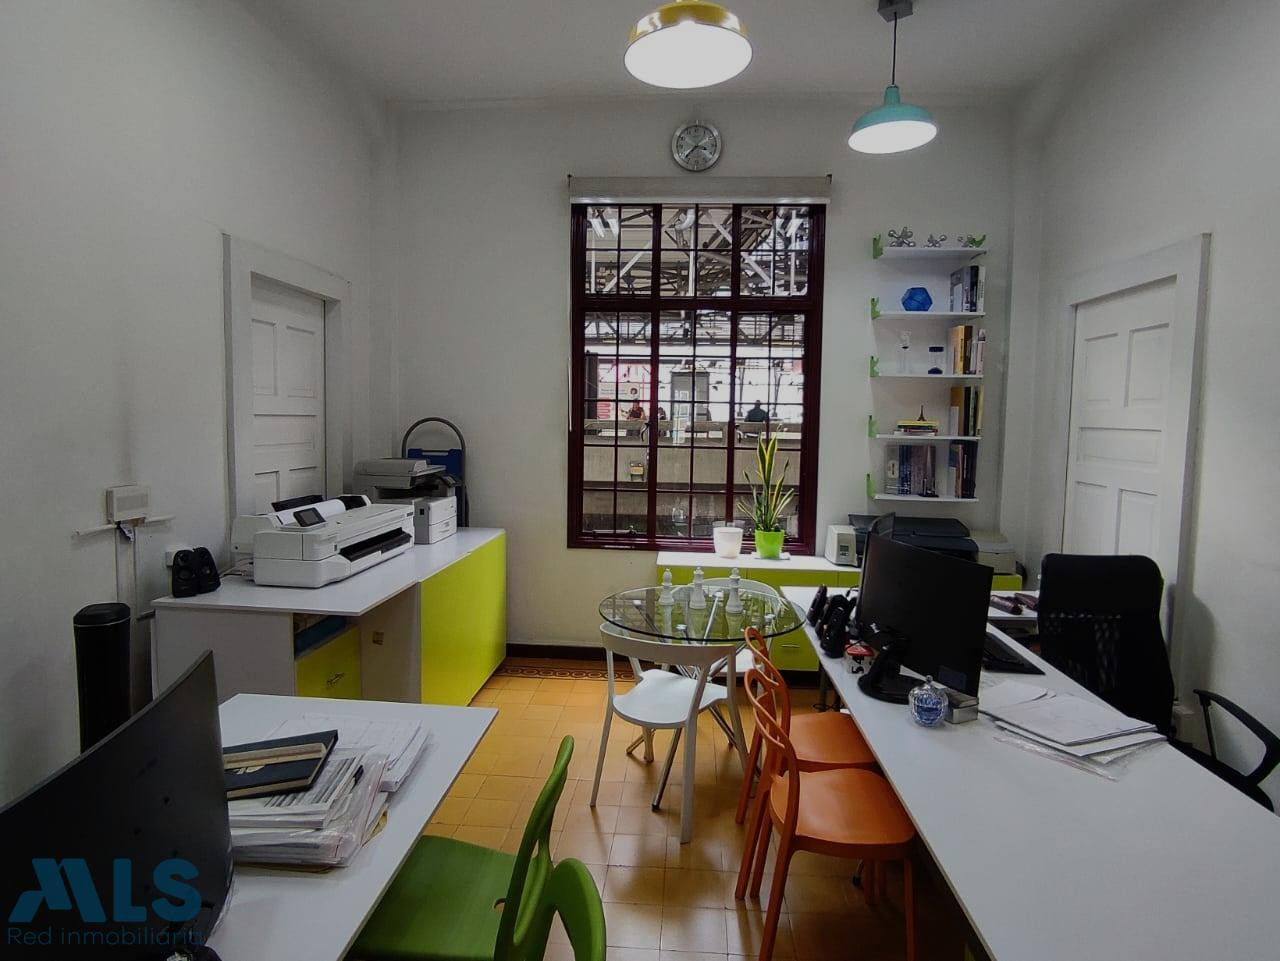 Venta de oficina en el centro de Medellín medellin - centro